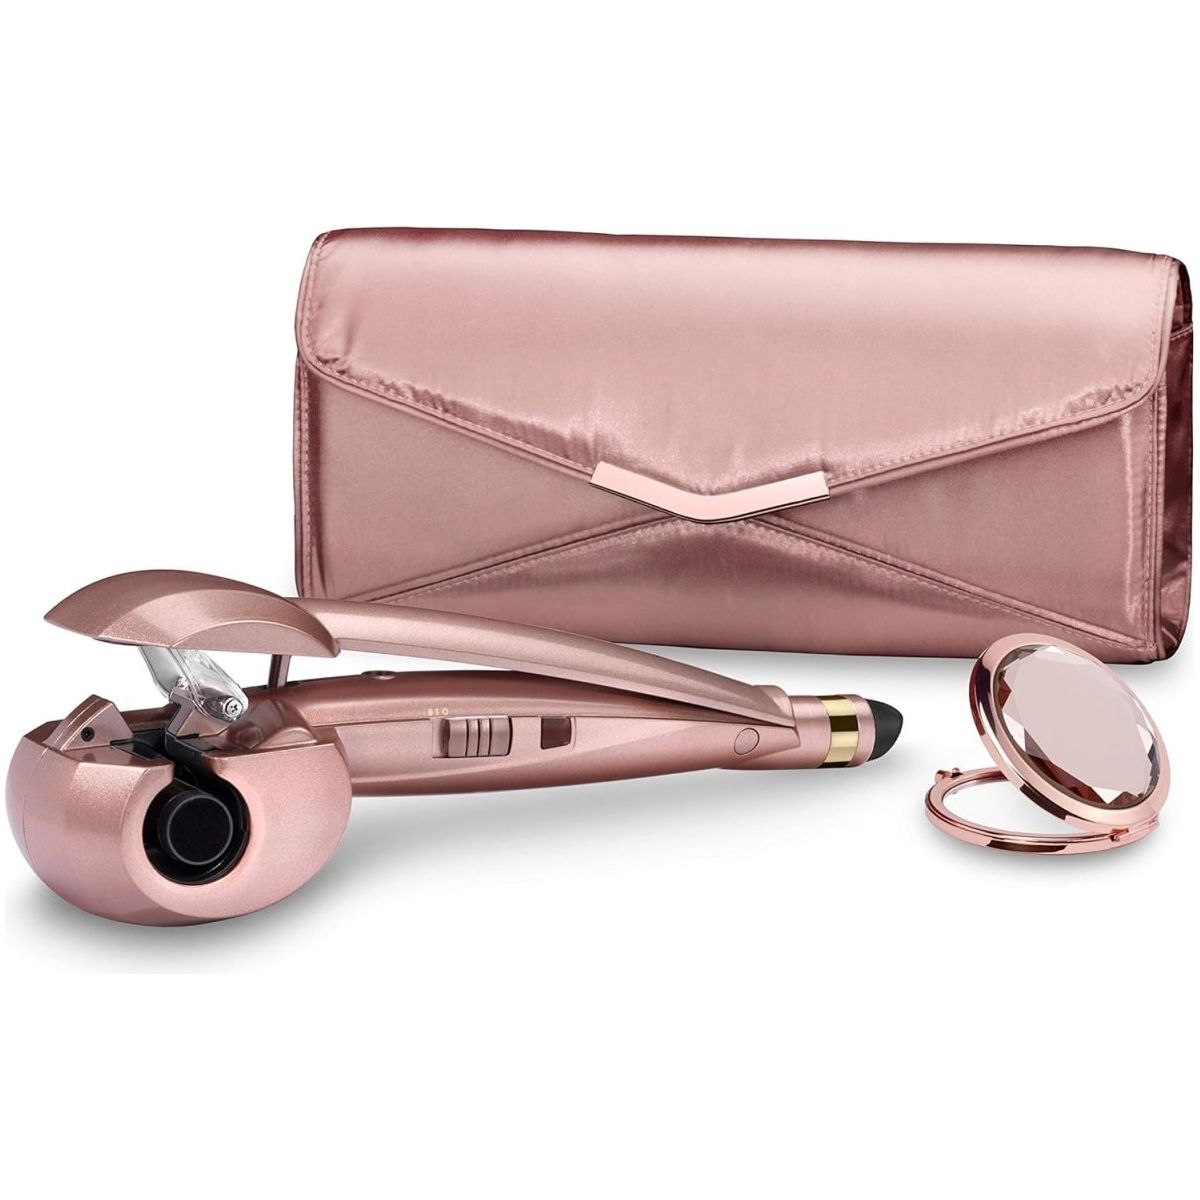 BaByliss Curl Secret Simplicity Gift Set, Rose Gold - DG International Ventures Limited